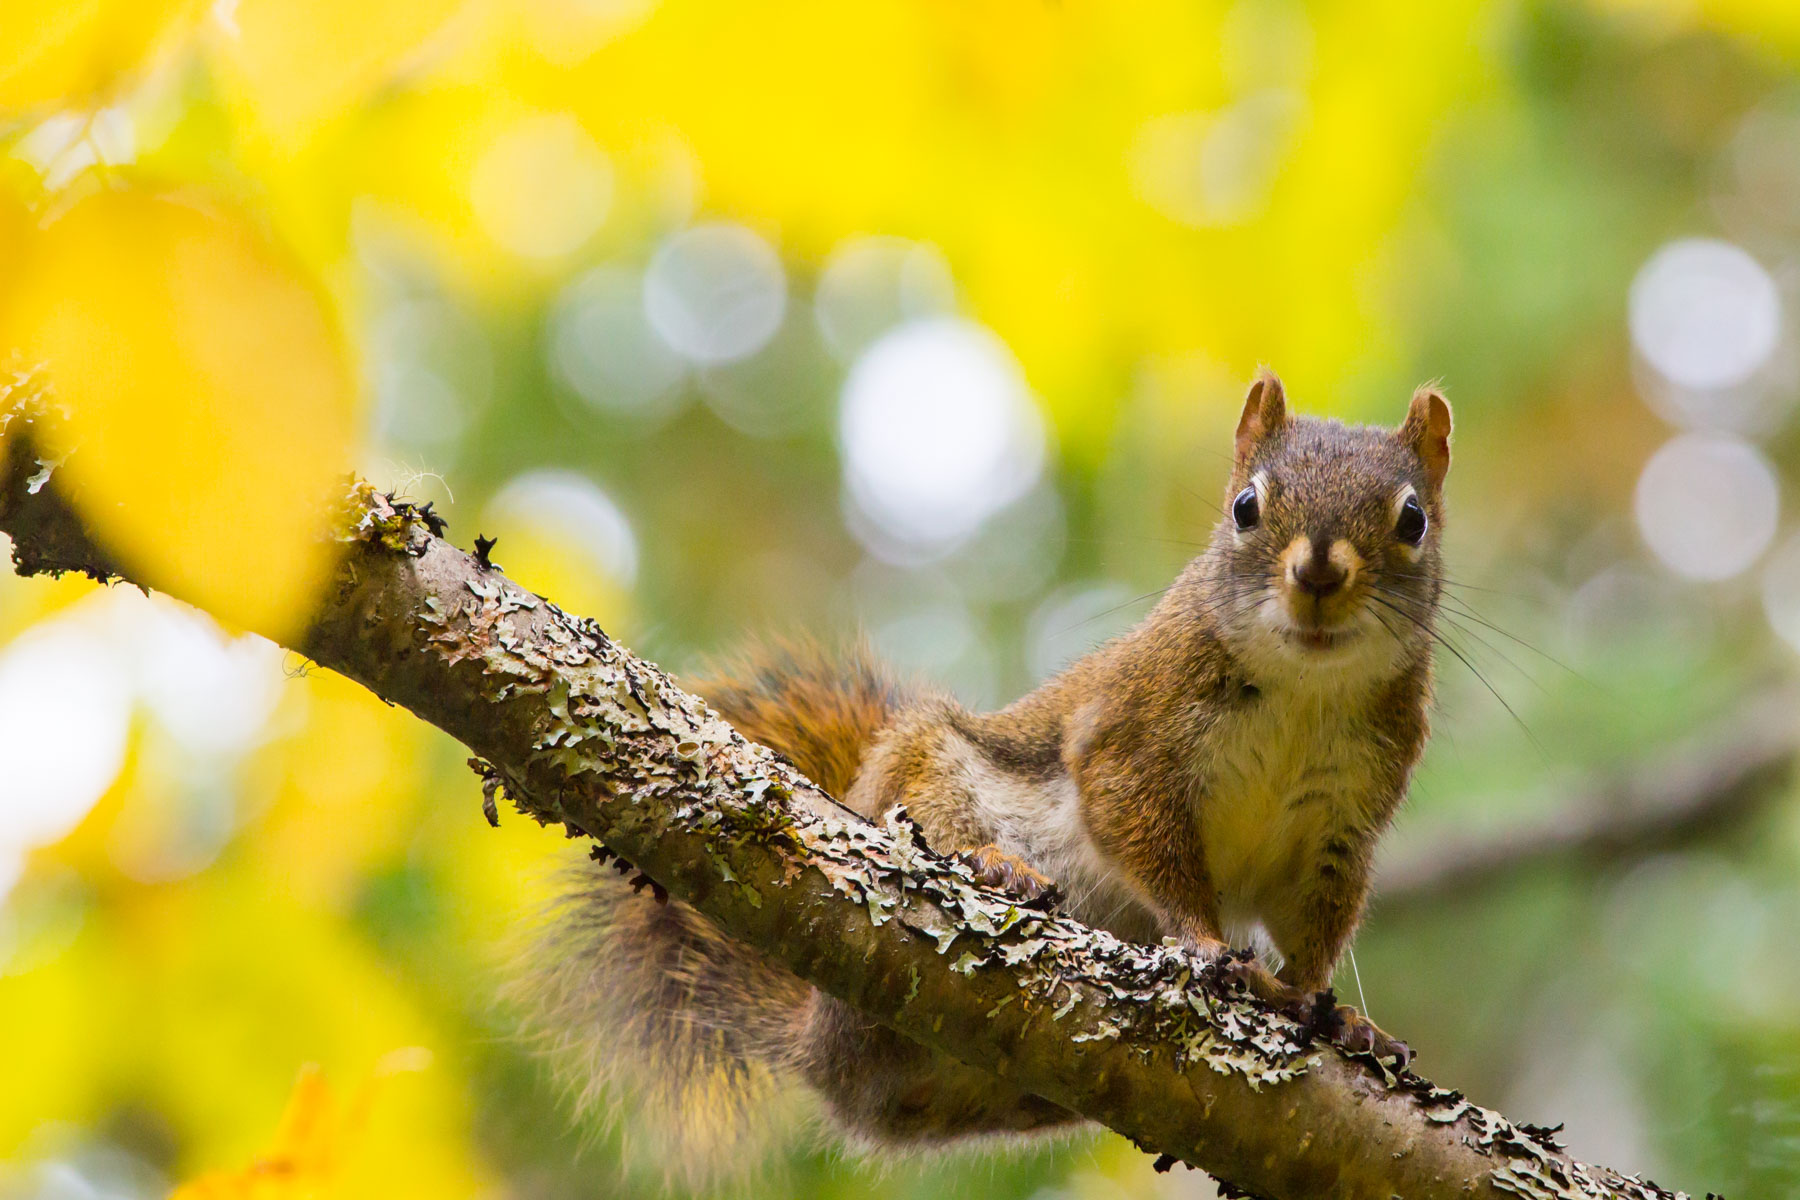 Dans un feuillage jaune et vert, un écureuil roux se tient perché sur une branche.